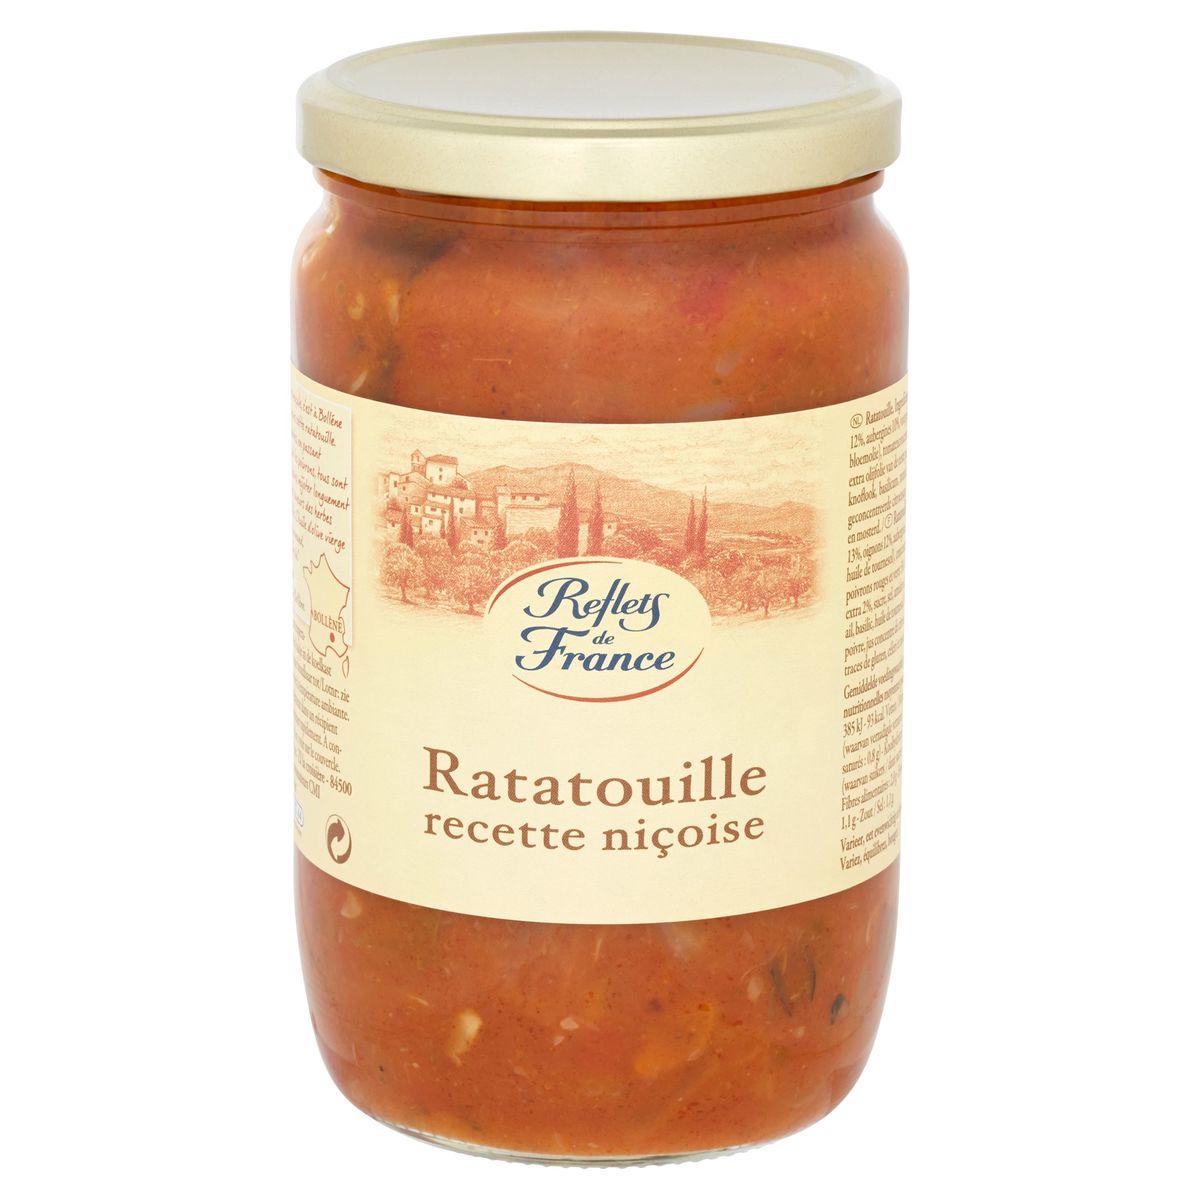 Reflets de France Ratatouille Recette Niçoise 630 g